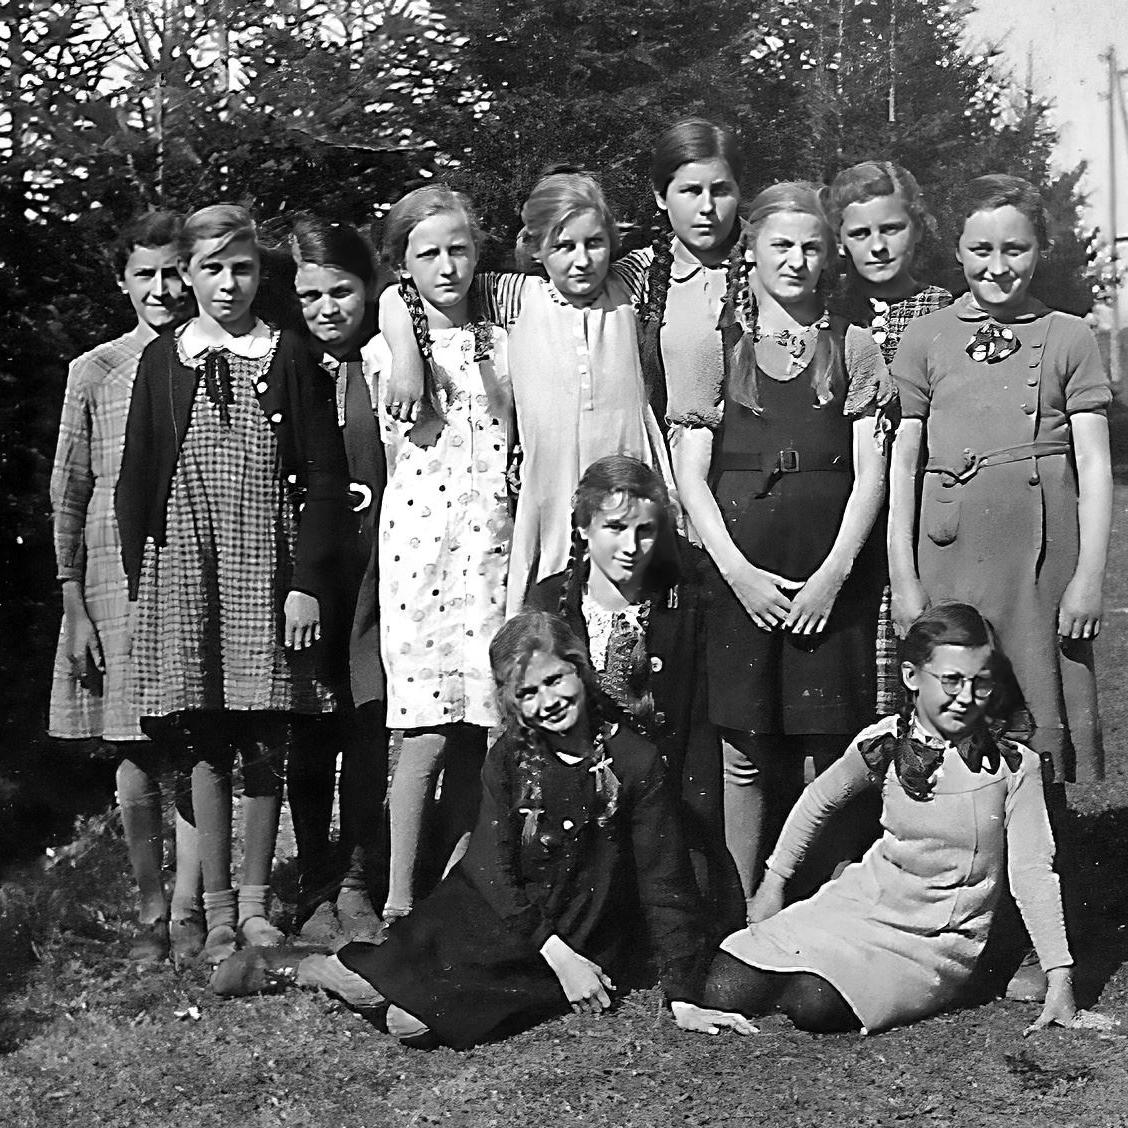 1942: Das Bild wurde im Jahr 1942 auf dem Turn- und Spielplatz im Hardt aufgenommen. Es zeigt die Mädchen des 7ten Schuljahrs, Jahrgang 1928 aus Mittelstadt. (Quelle: Lore Kimmerle)